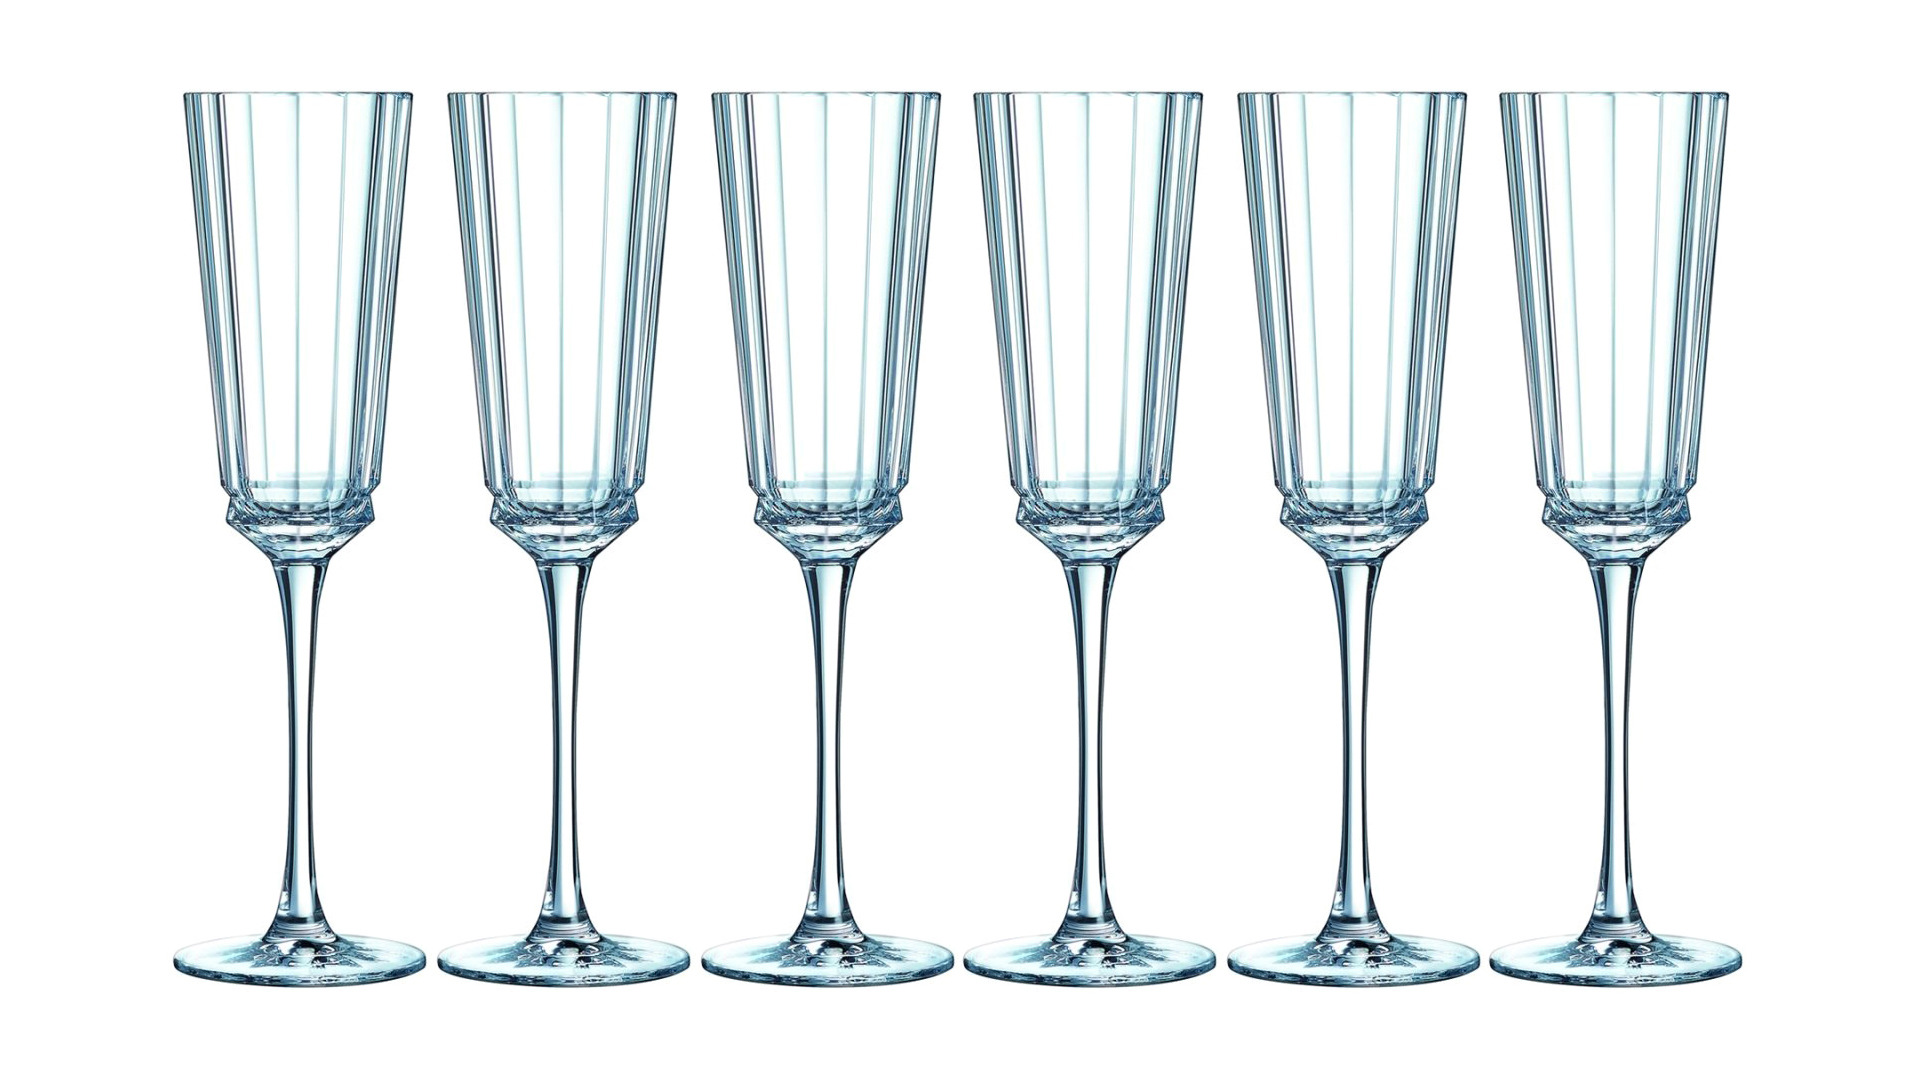 Набор бокалов для шампанского Cristal D'arques Macassar 170 мл, 6 шт, стекло